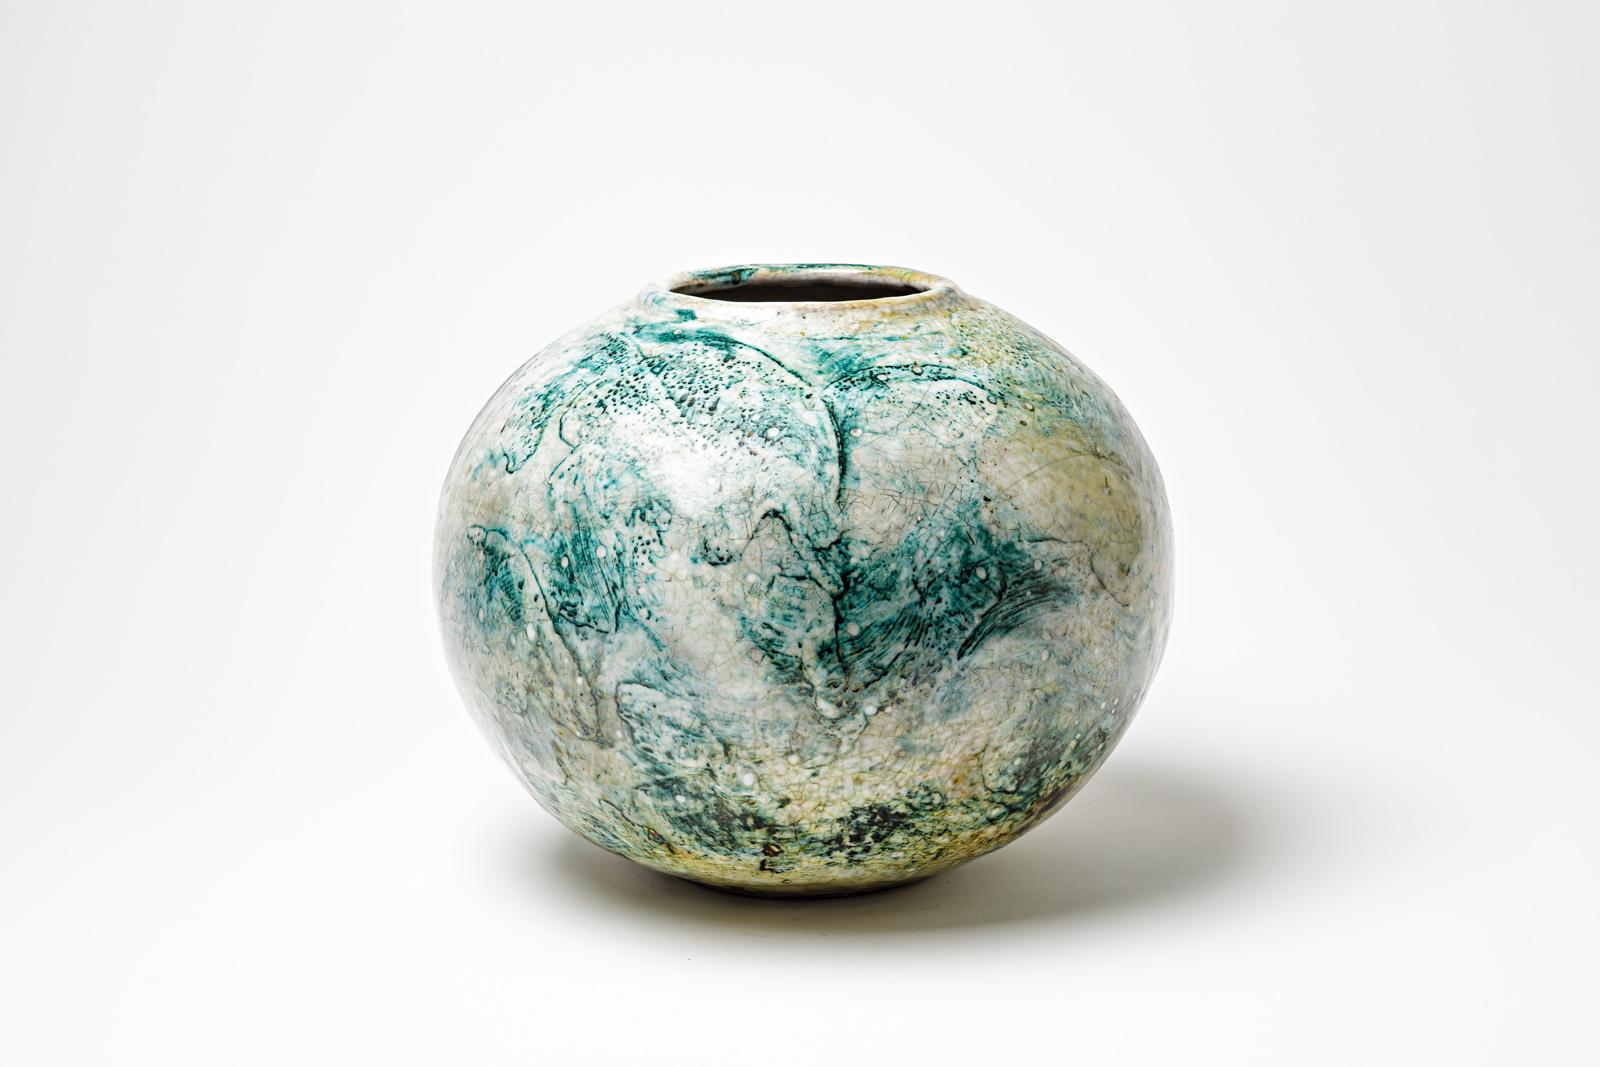 Vase en céramique émaillée vert/bleu et blanc de Gisèle Buthod Garçon.
Raku a tiré. Monogramme et signature de l'Artistics sous la base. Vers 1980-1990. 
H : 10.2' x 11.8' pouces.